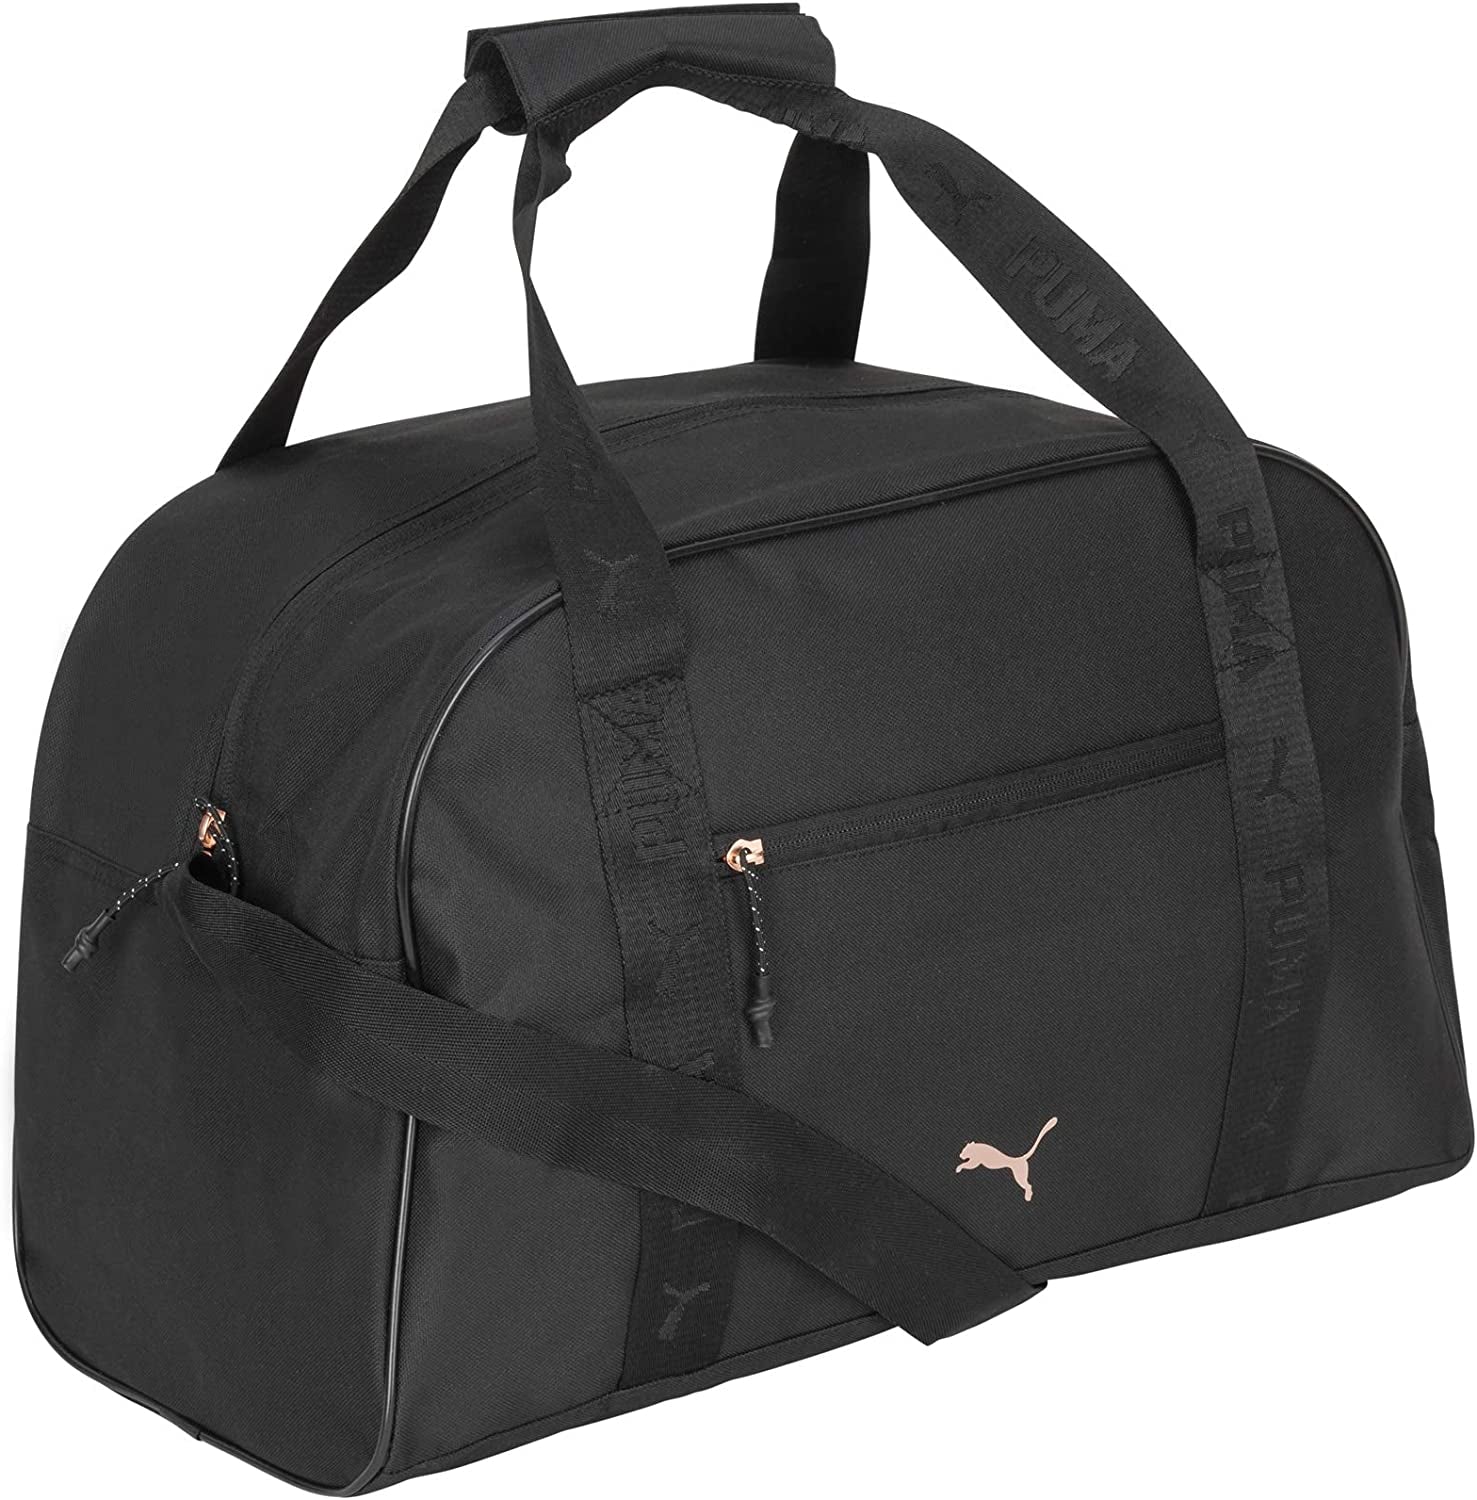 Evercat Women'S Velocity Duffel Bag - Puma